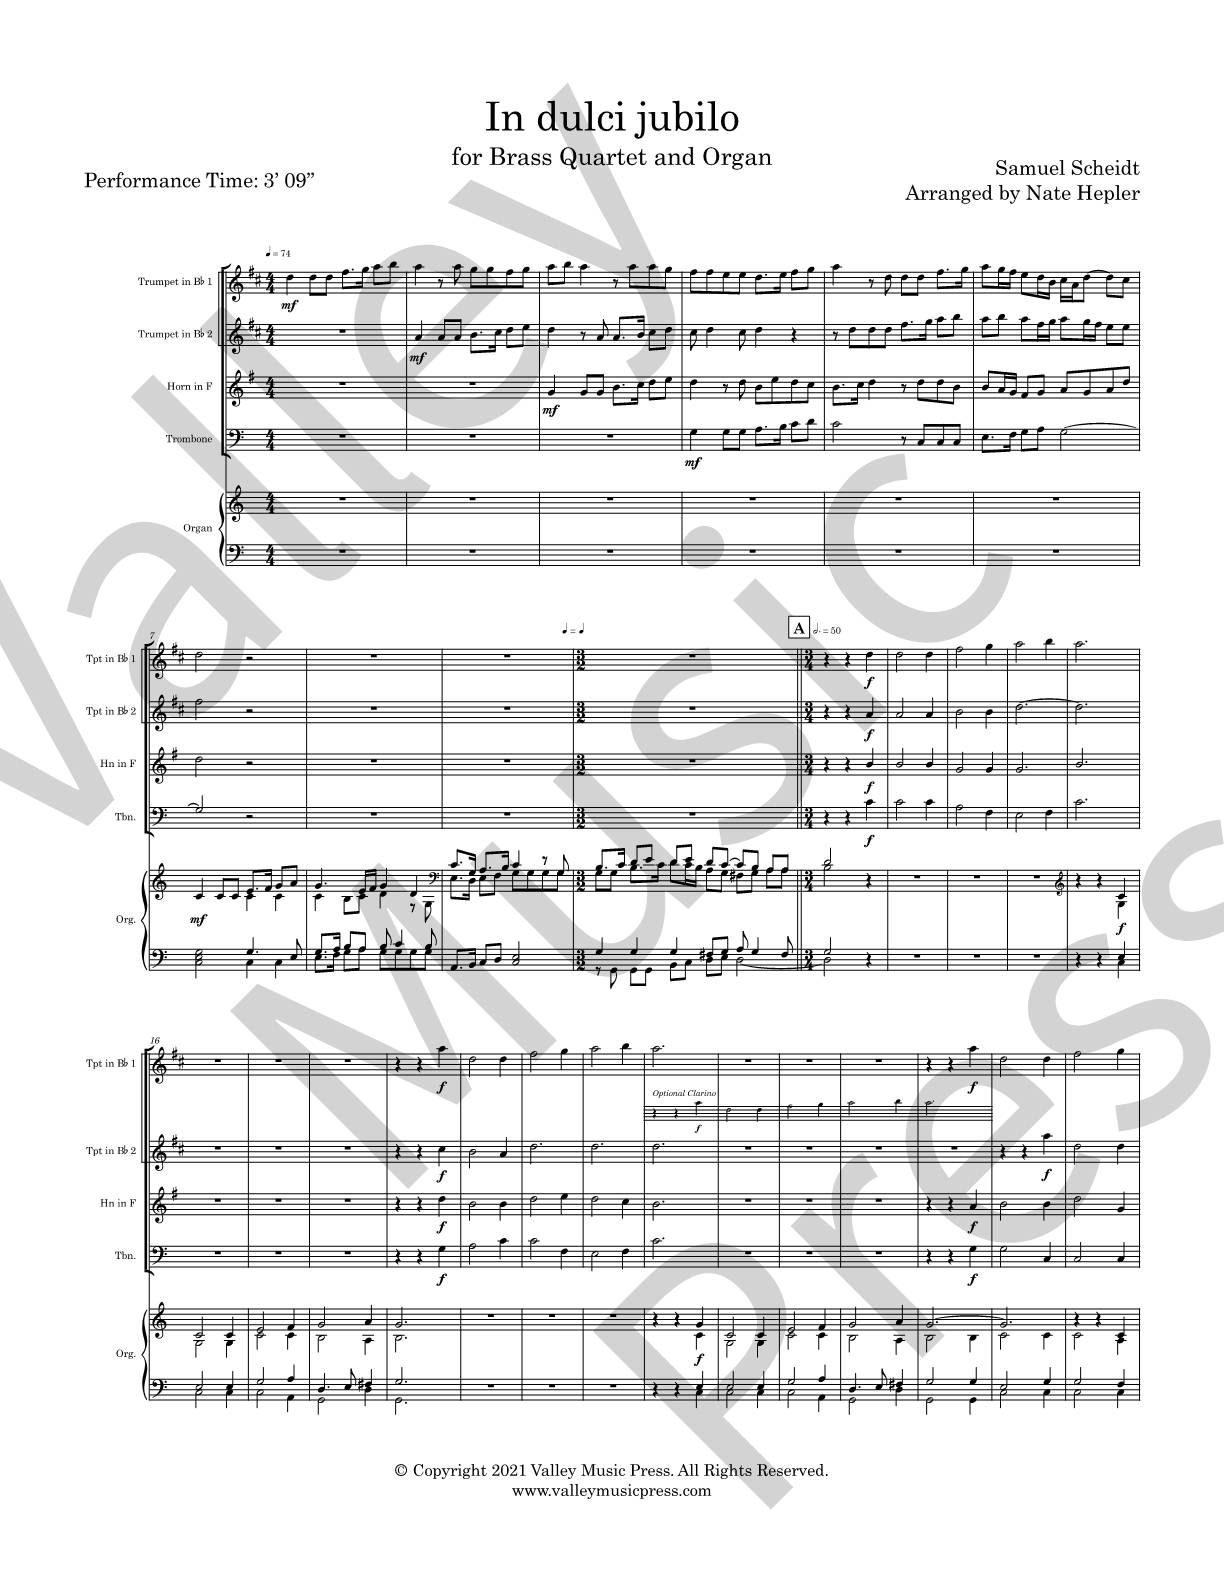 Scheidt - In dulci jubilo (Brass Quartet with Organ)